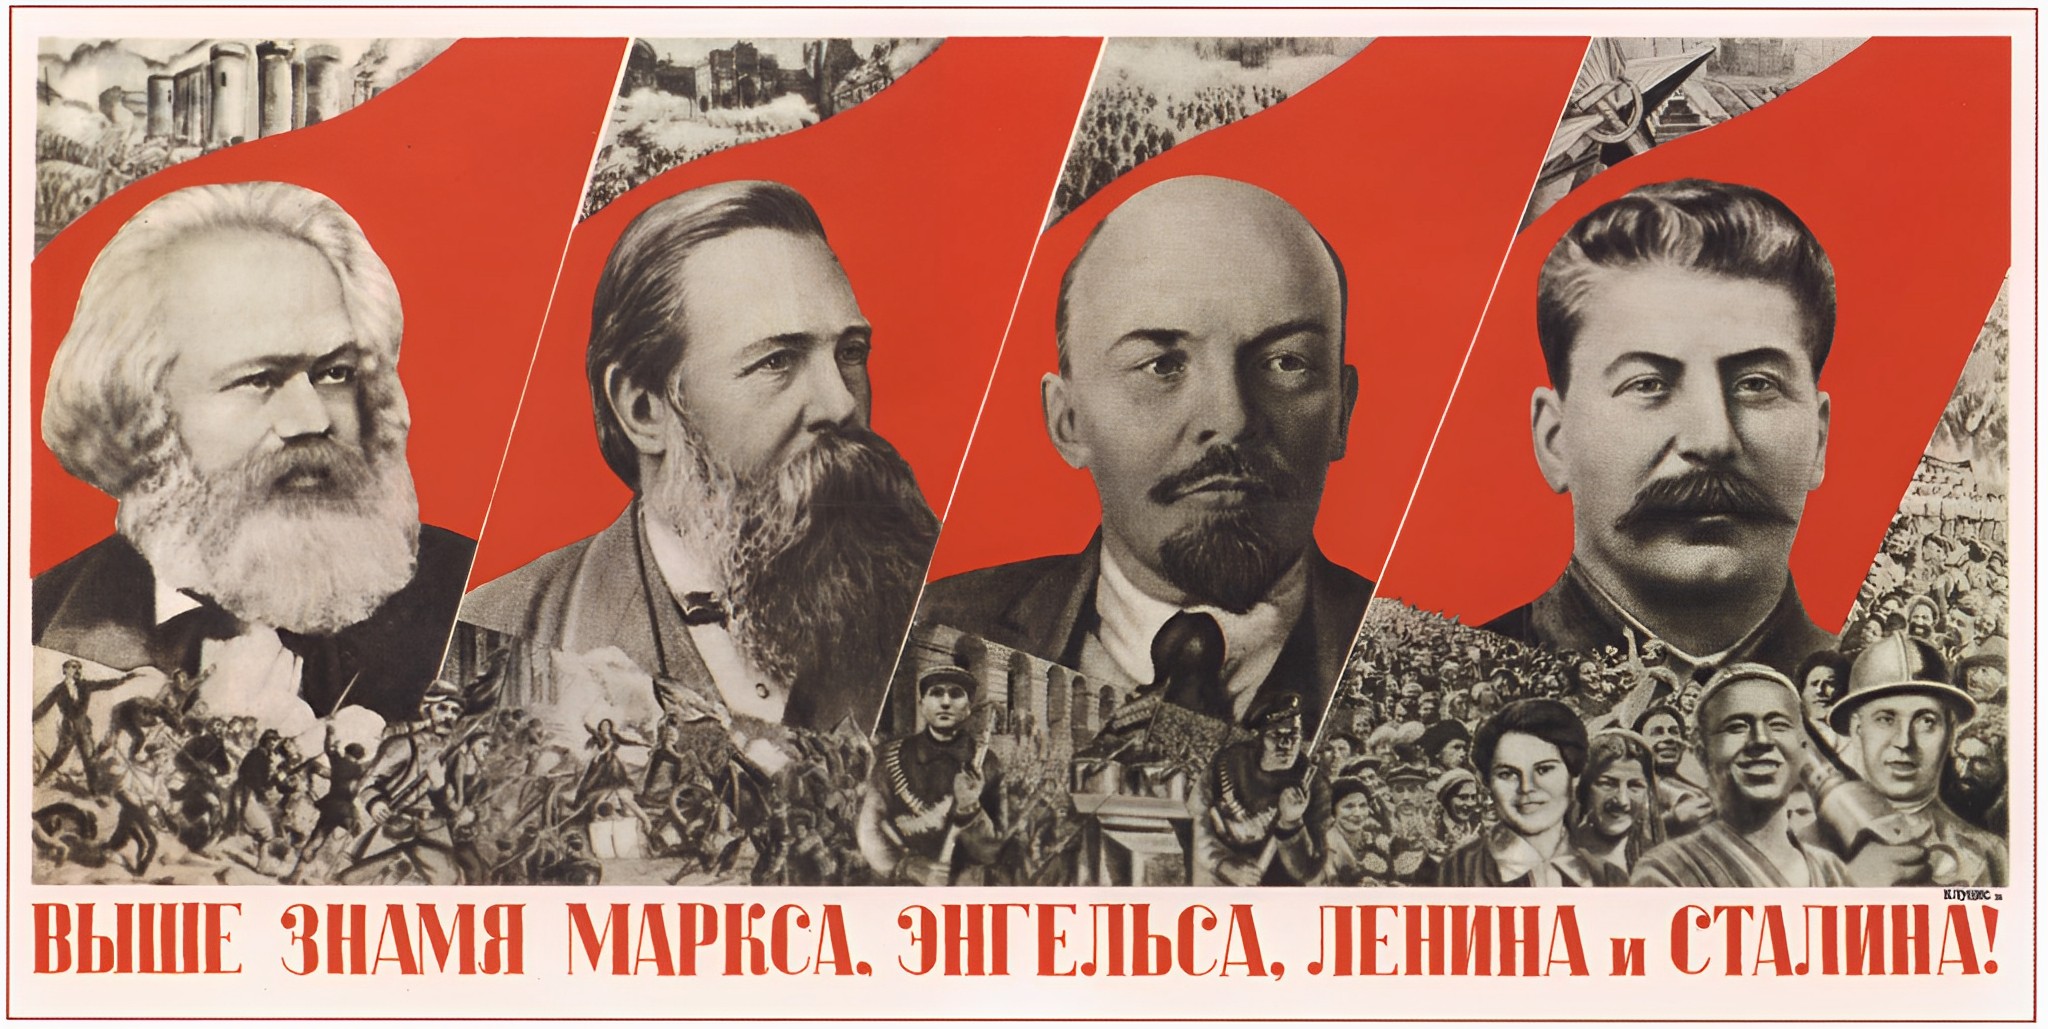 Г. Клуцис. Плакат. 1933. G. Kloutsis. Toujours plus haut le drapeau de Marx, Engels, Lénine et Staline.